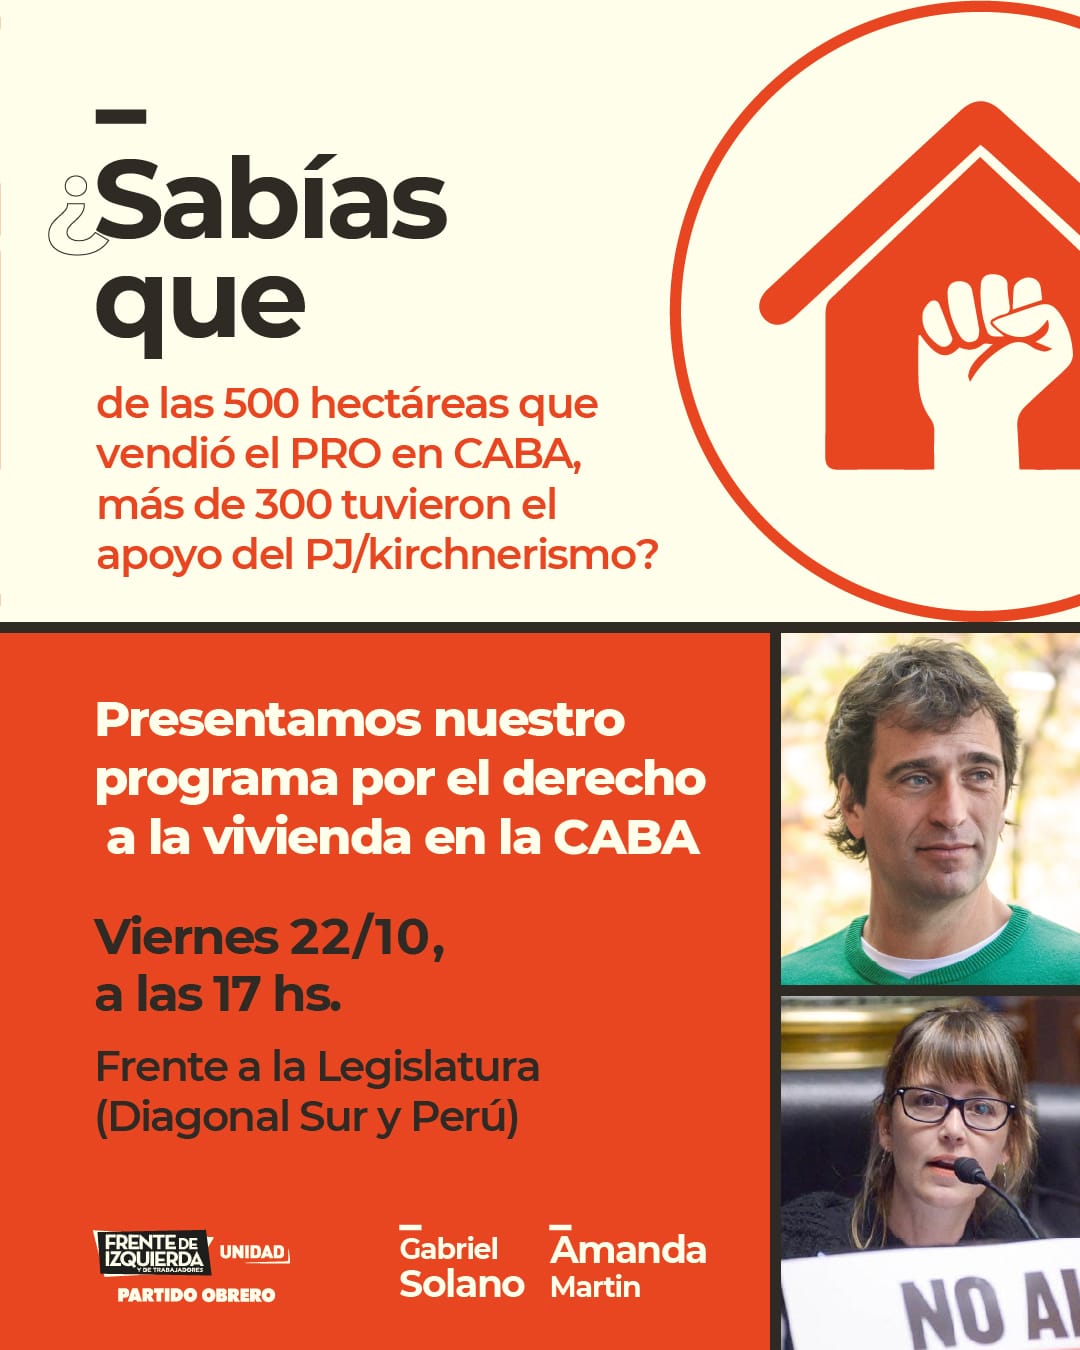 [Hoy 17hs: Presentación  de la plataforma de vivienda del Partido Obrero “La vivienda es un derecho]  Gabriel Solano: “Reclamamos un impuesto a la vivienda ociosa, banco de tierras  y plan de viviendas para los trabajadores”